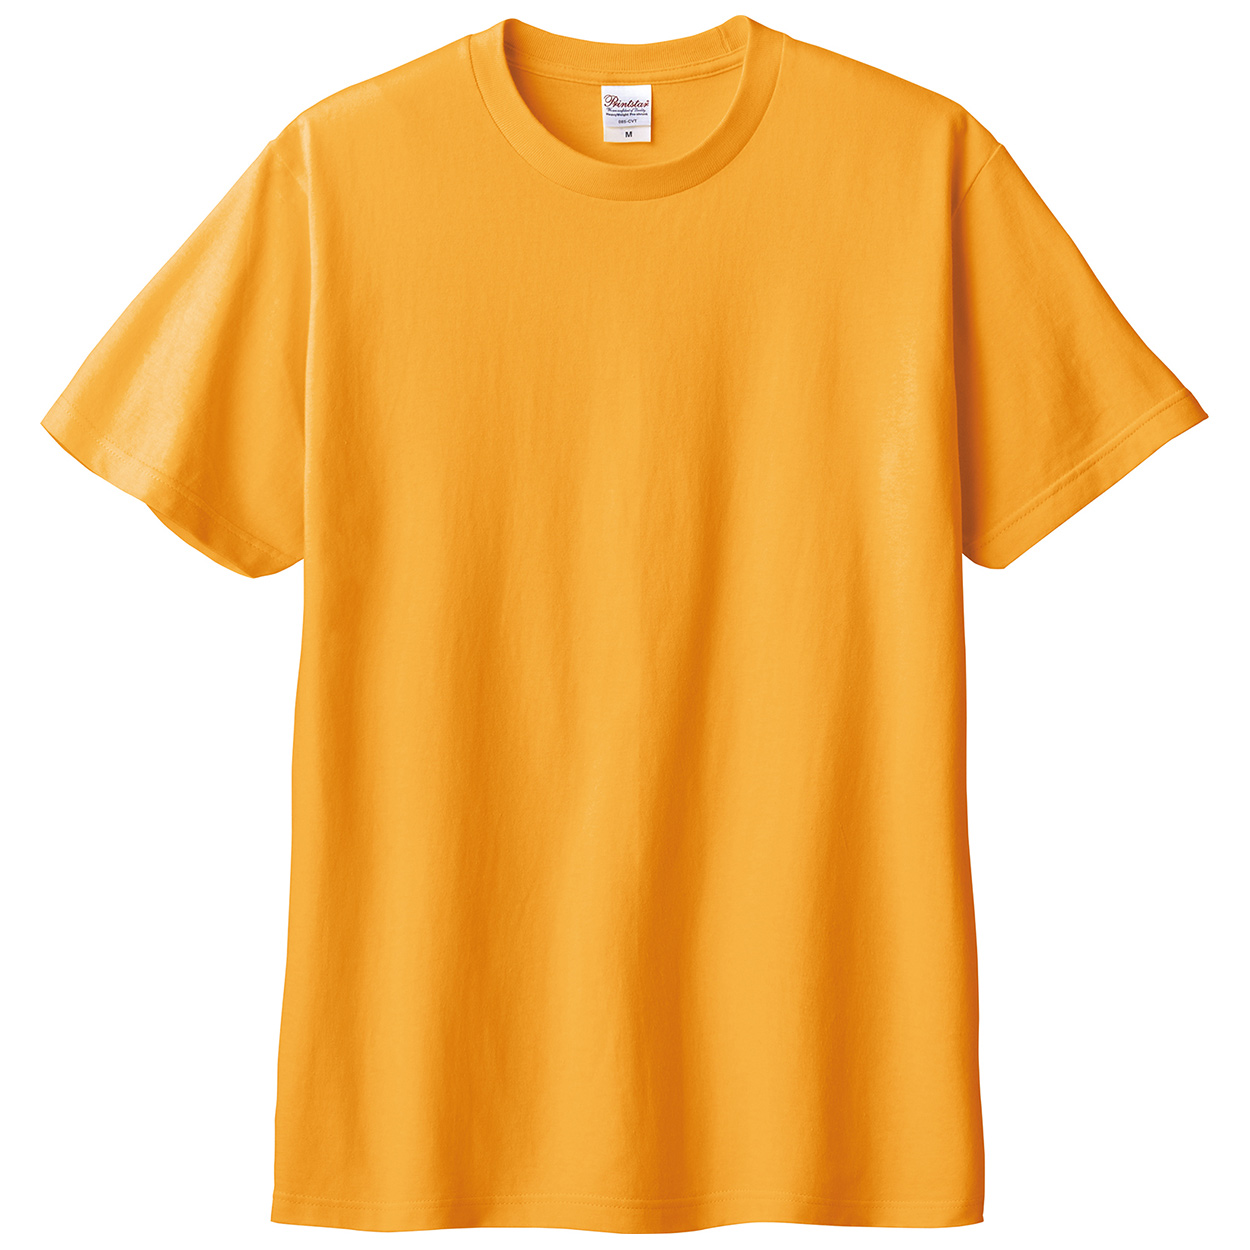 Tシャツ メンズ レディース 定番 無地 半袖 人気 ブランド アメカジ スポーツ アウトドア かっこいい かわいい 赤 黄色 ピンク オレンジ プレゼント ギフト S～XL プリントスター 大人 男性 女性 男子 女子 S M L XL XXL XXXL 20代 30代 40代 50代 (取寄せ)